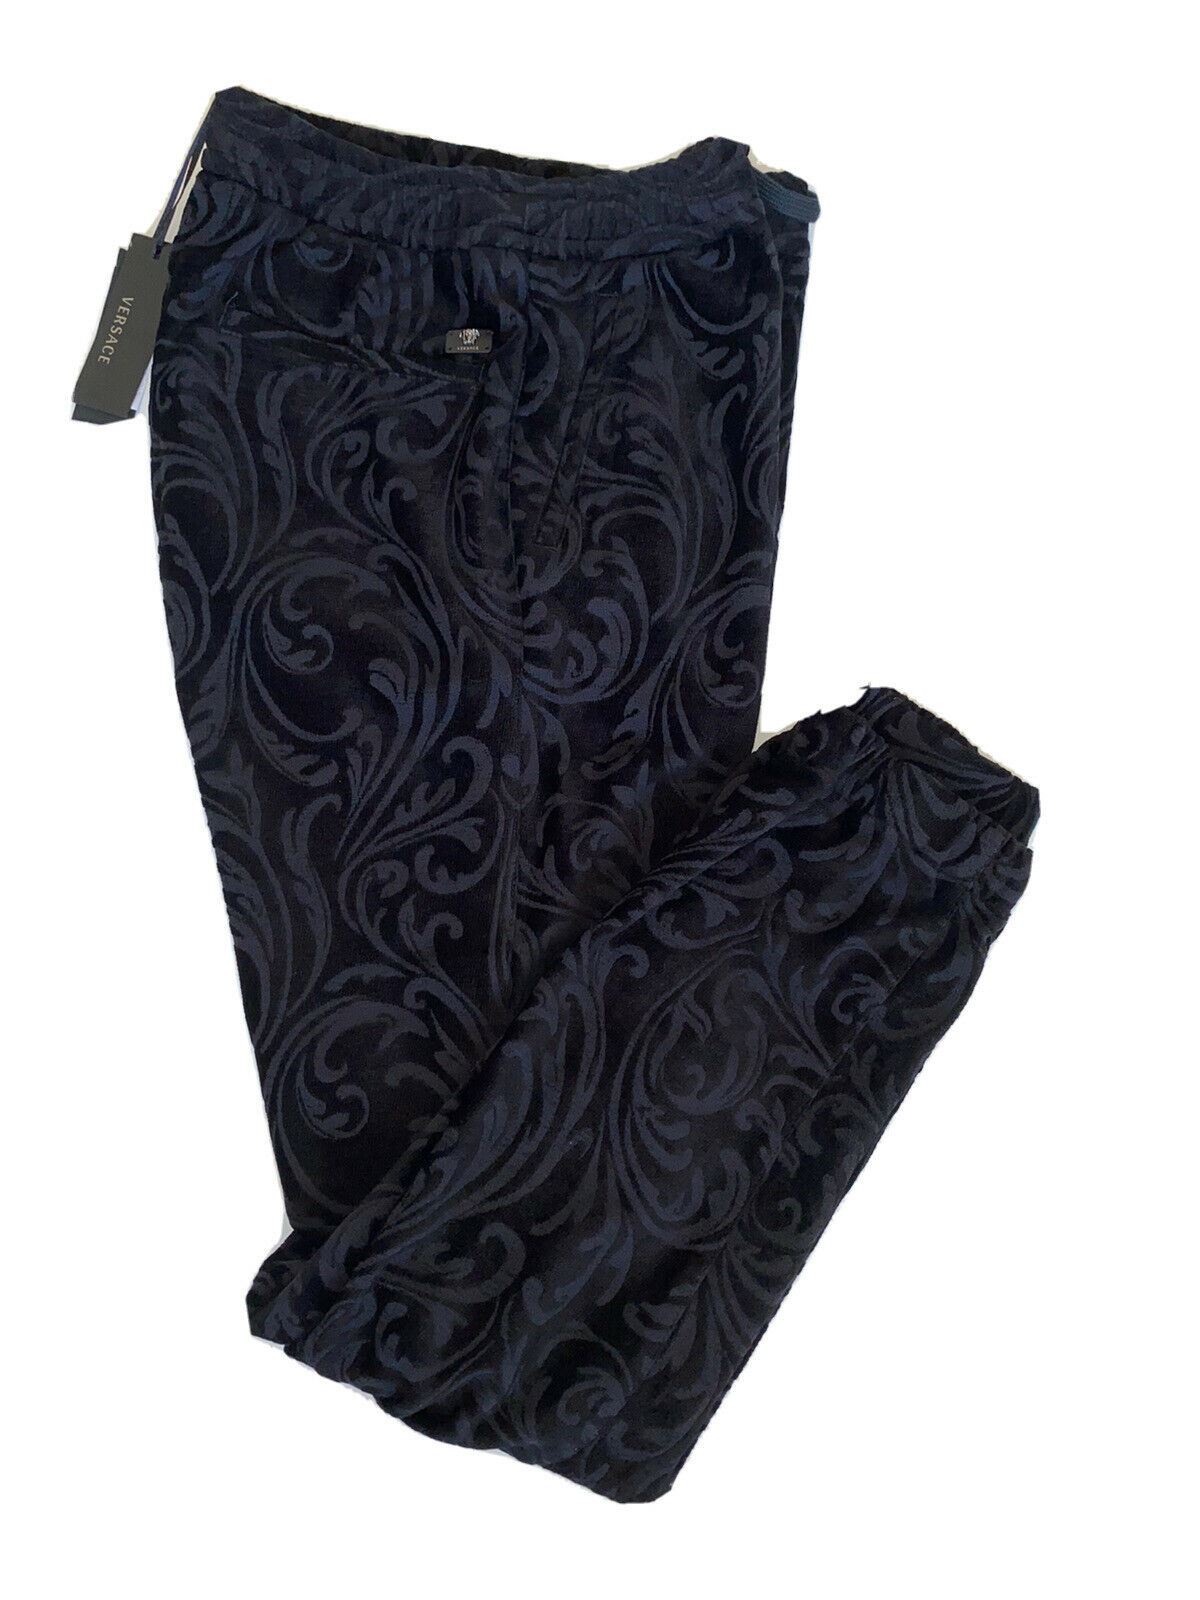 Мужские черные брюки для спортивной одежды Versace NWT $975, размер средний 3XL, Италия A79524